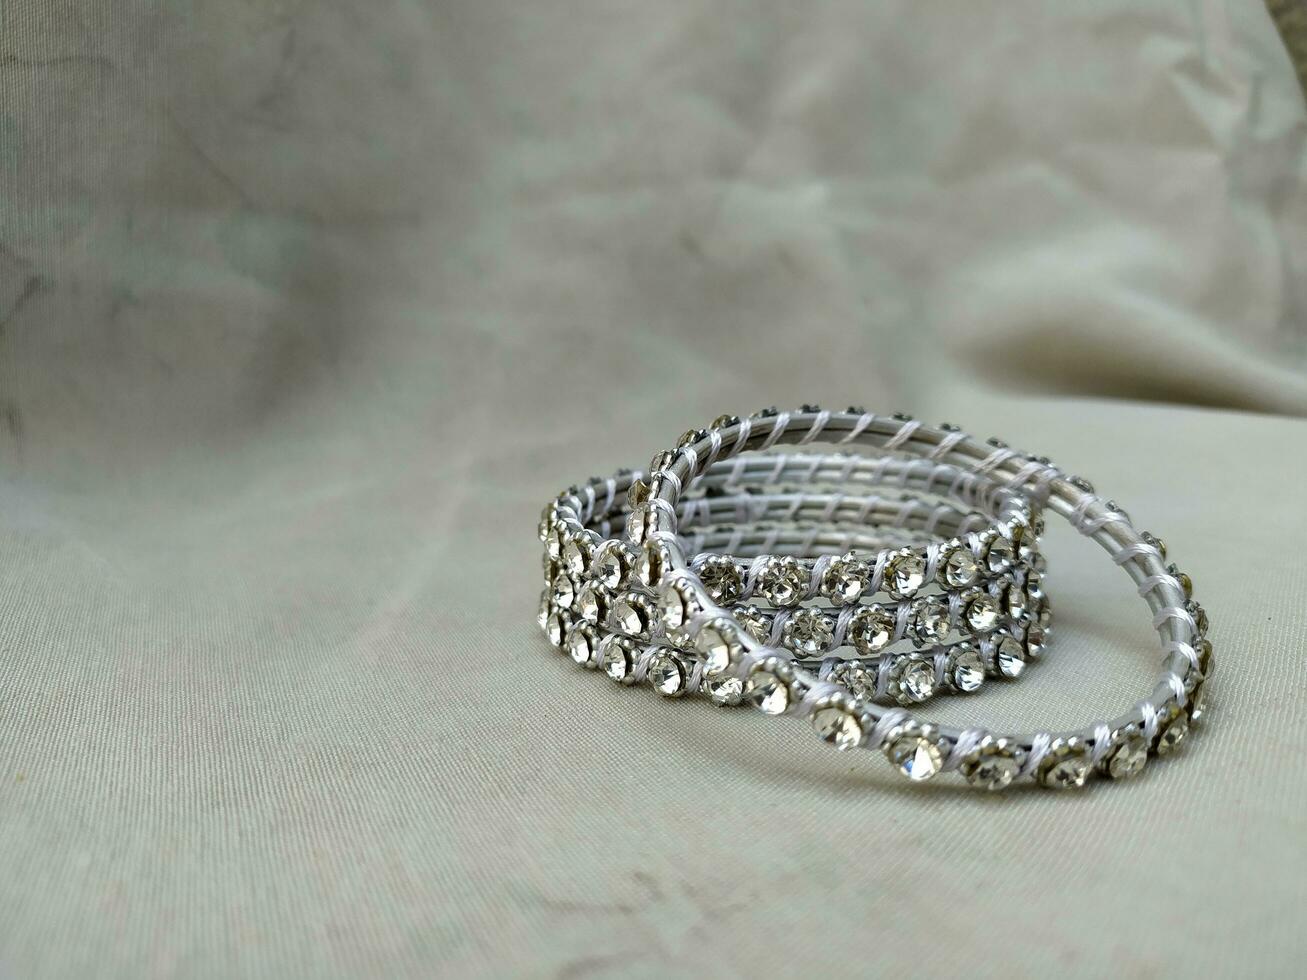 schön Weiß Silber Armband mit Perle Ornamente foto